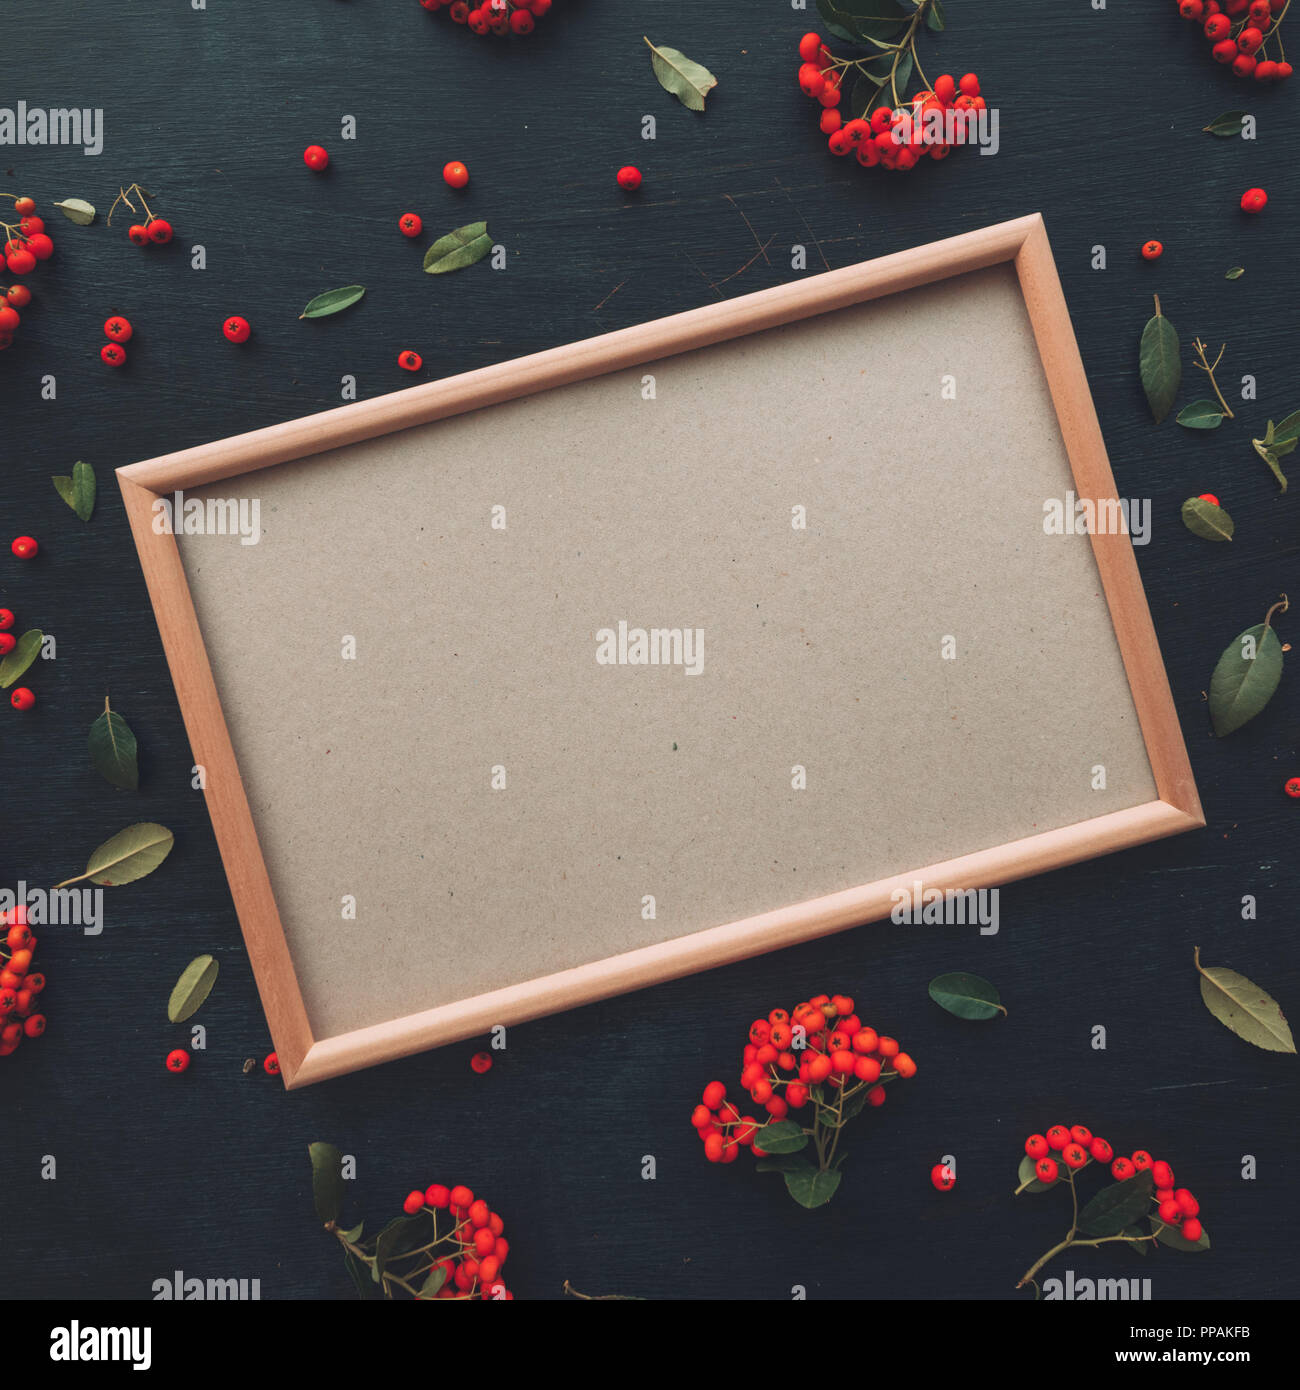 Flach leer Bild mock up Kopie Raum auf dunklem Hintergrund mit wilden Beerenfrucht Anordnung eingerichtet Stockfoto